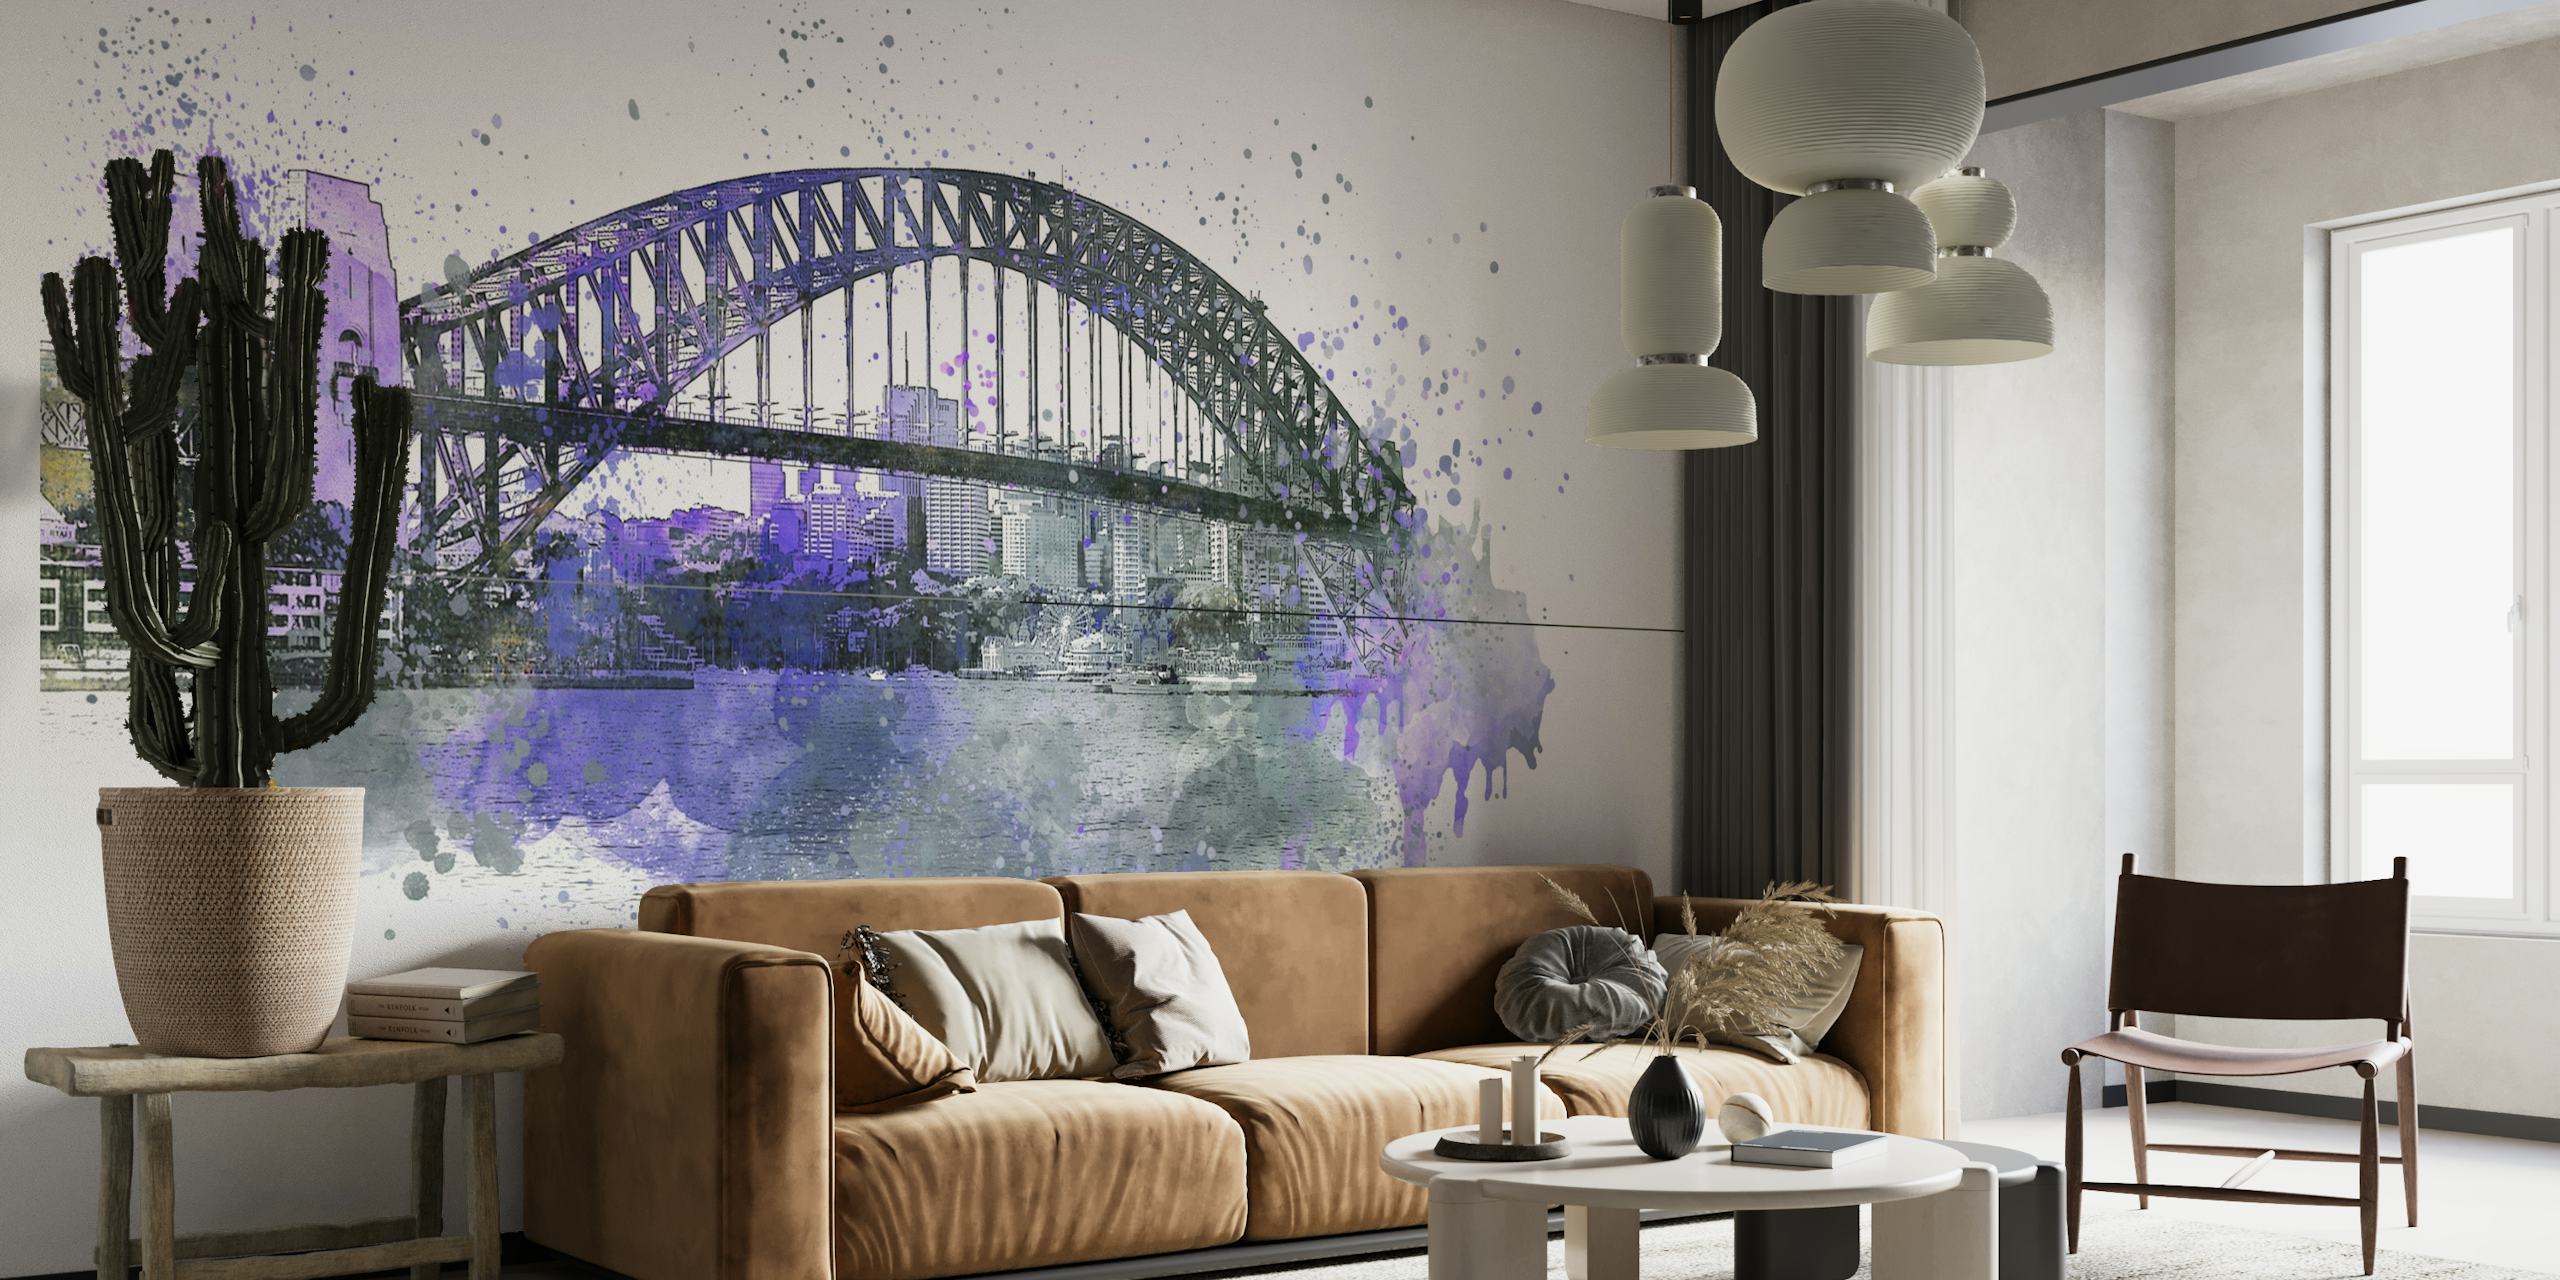 Kunstnerisk veggmaleri i akvarell av Sydney Harbour Bridge i lilla og gråtoner